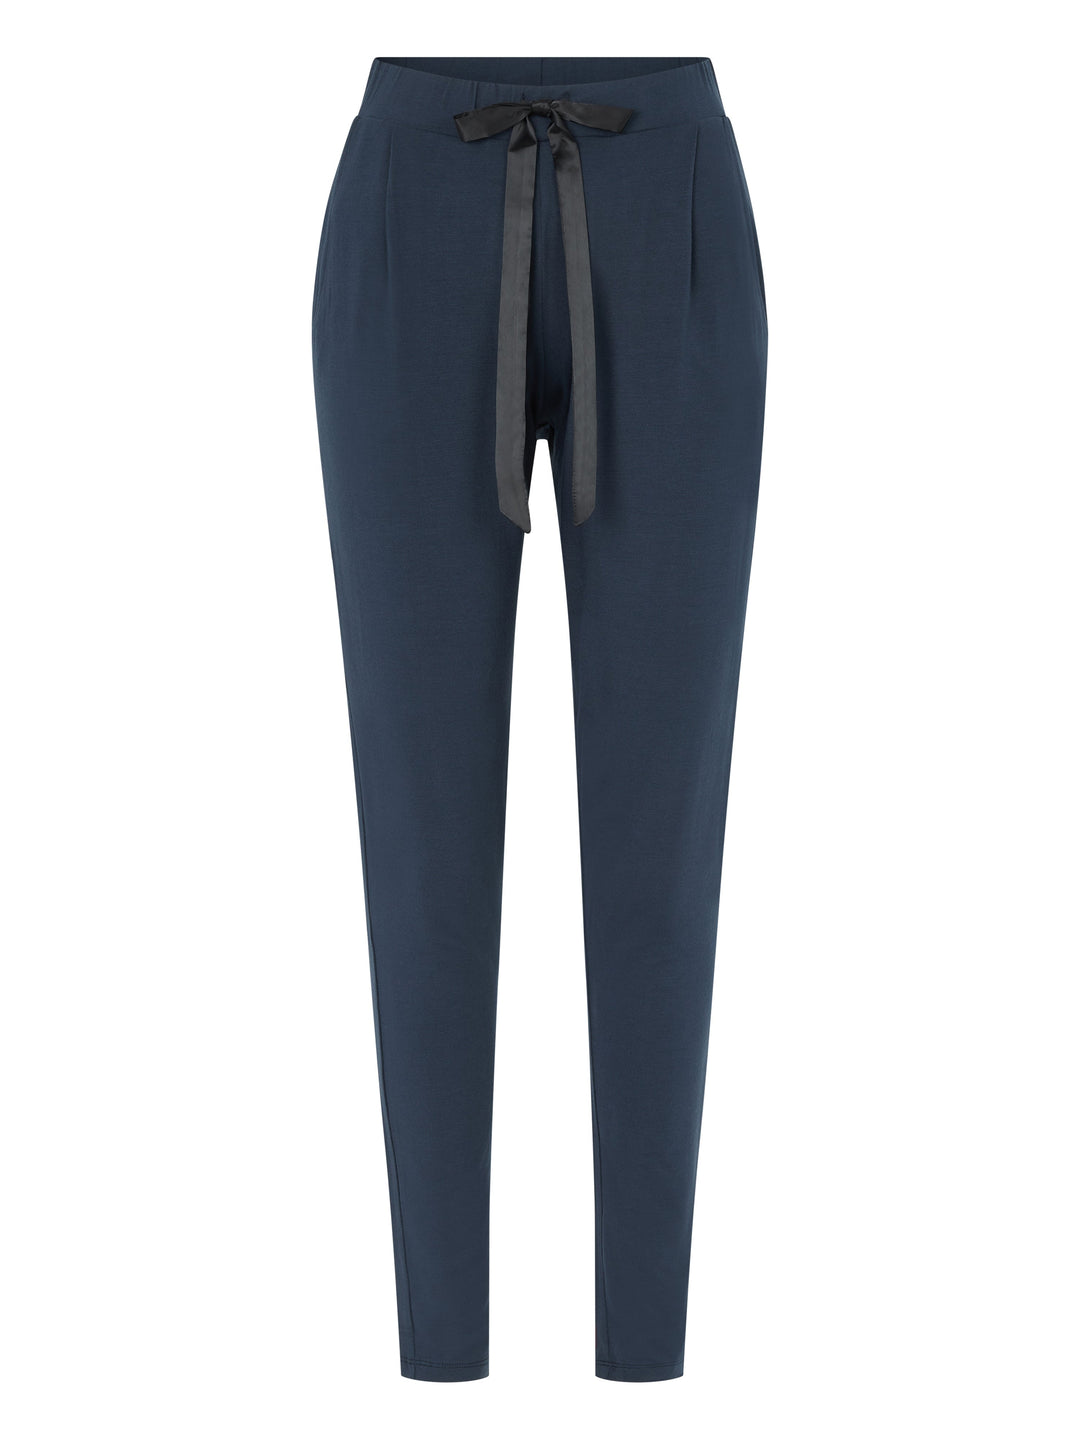 Femilet - Pantaloni del pigiama Lizzy Pantaloni del pigiama blu scuro blu scuro Femilet